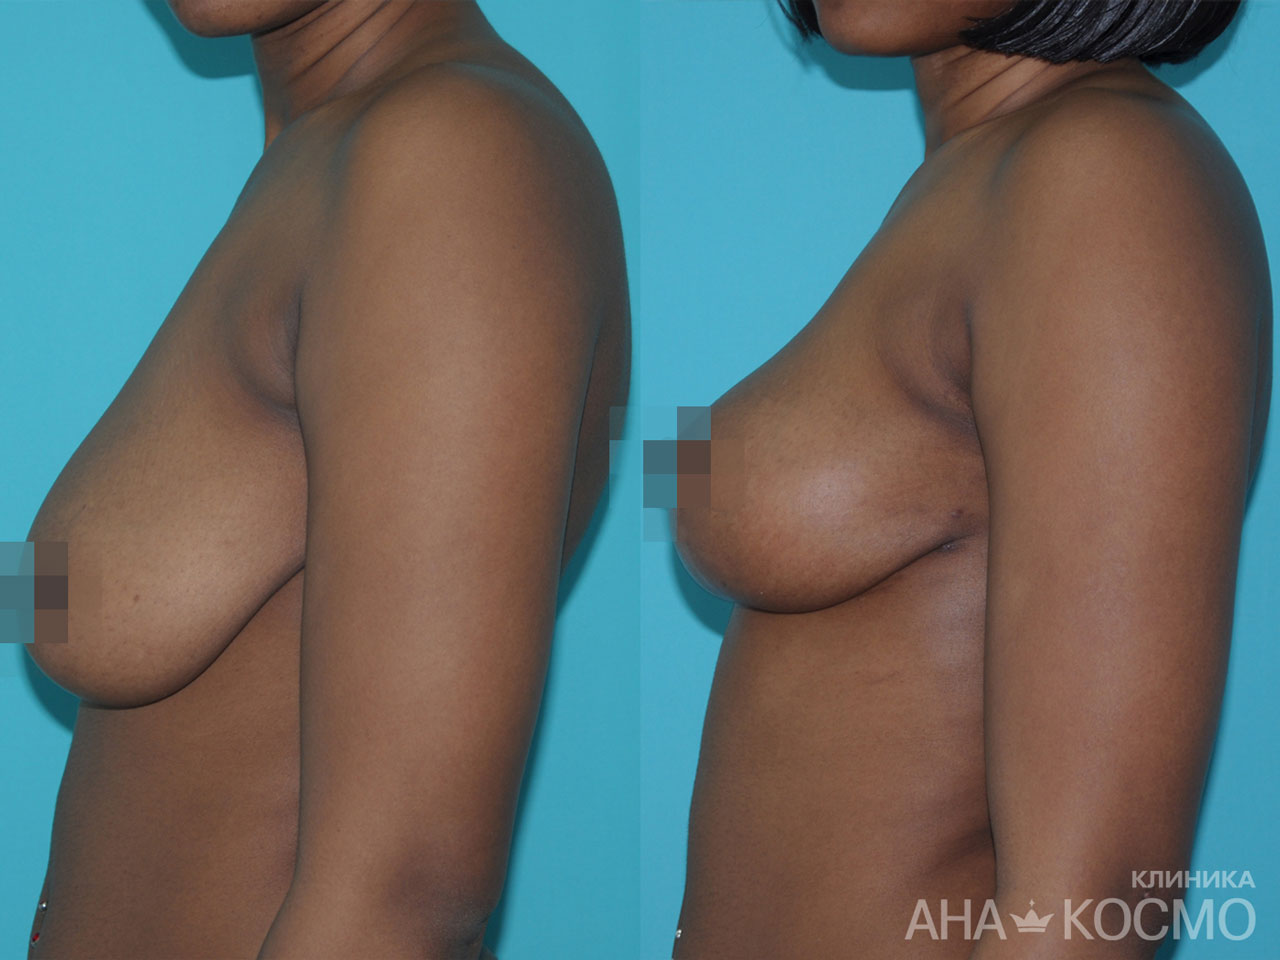 Пластическая операция - коррекция обвисшей груди - Фото До и После